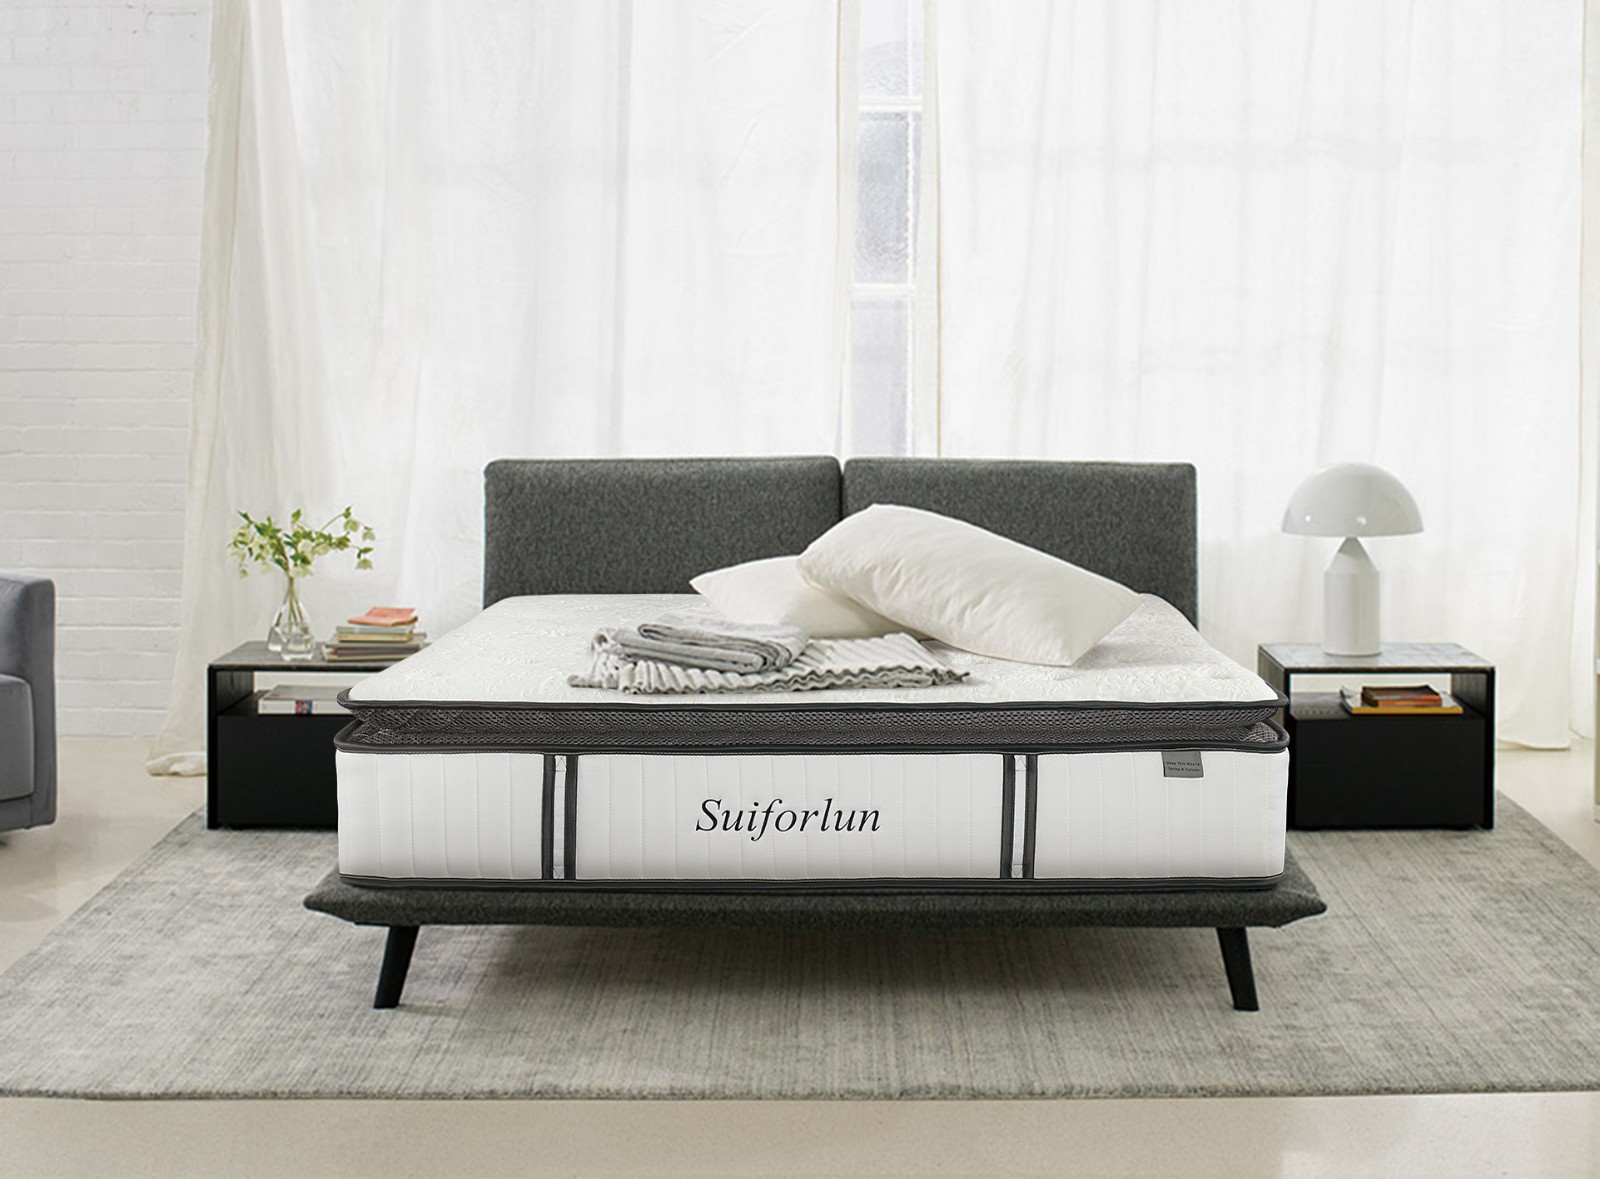 Suiforlun mattress hybrid bed wholesale-1